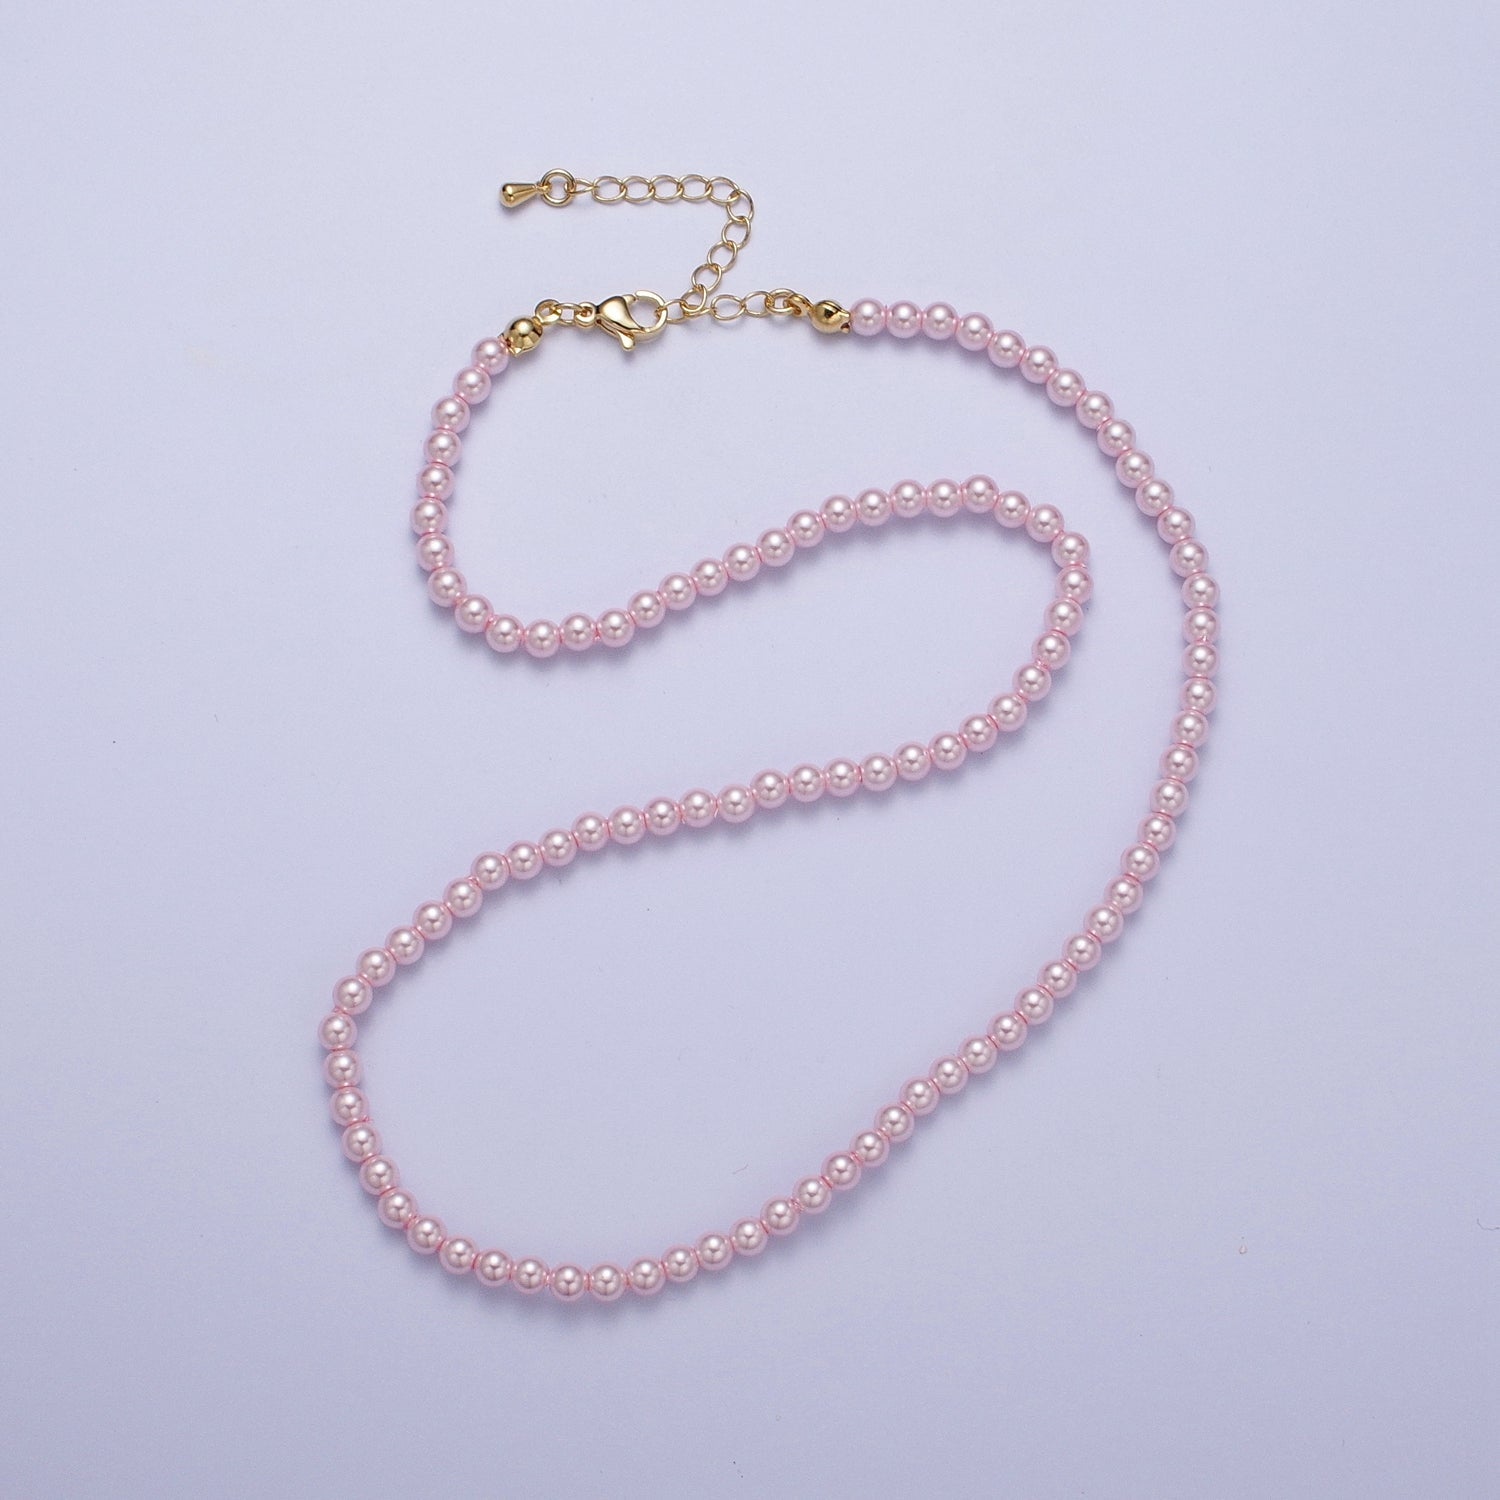 Gold Filled 17 Inch Round White/Pink Shell Pearl Layering Choker Necklace in Silver & Gold | WA-1176, WA-1177, WA-1178, WA-1179, WA-1180 - DLUXCA